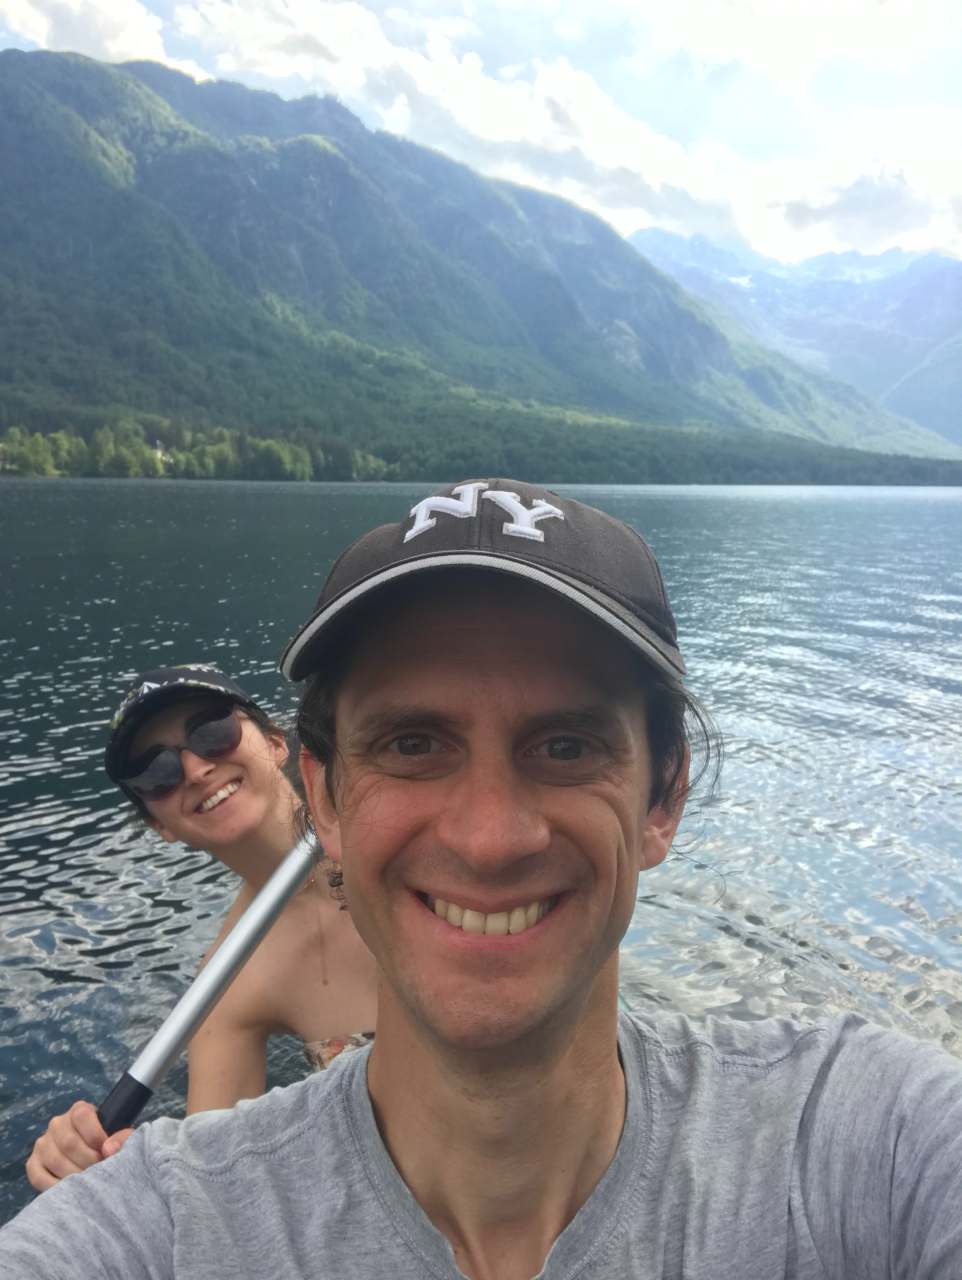 Two people enjoying Lake Bohinj in a canoe